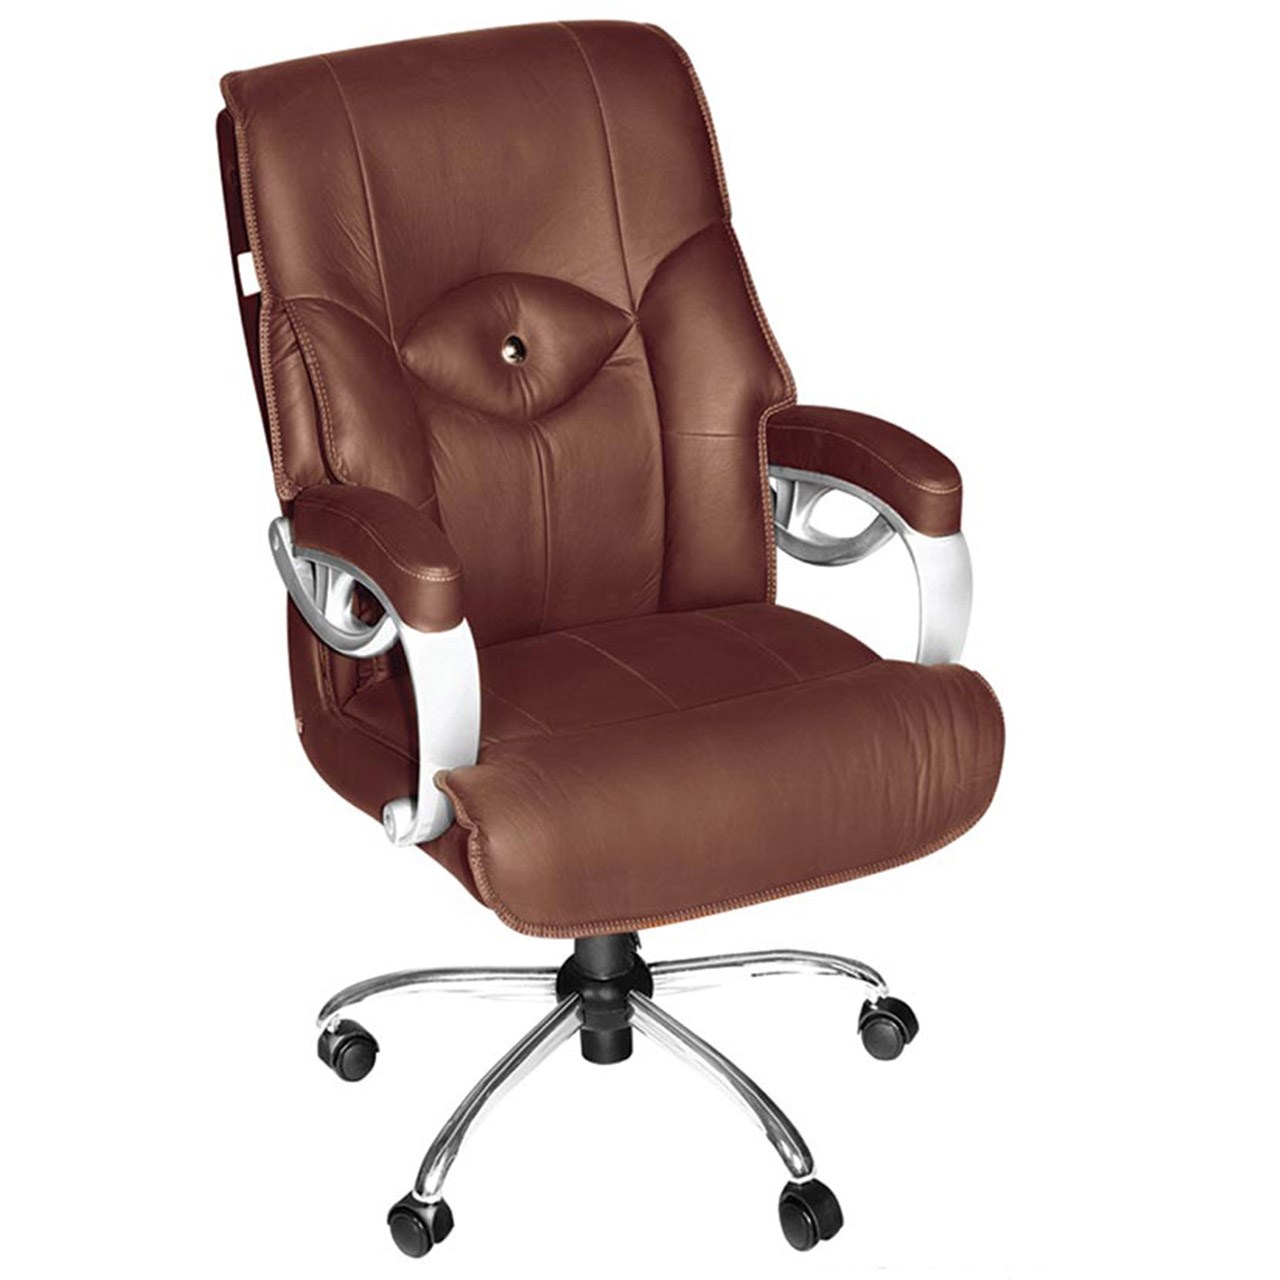 صندلی اداری نوین سیستم مدل 3010 چرمی